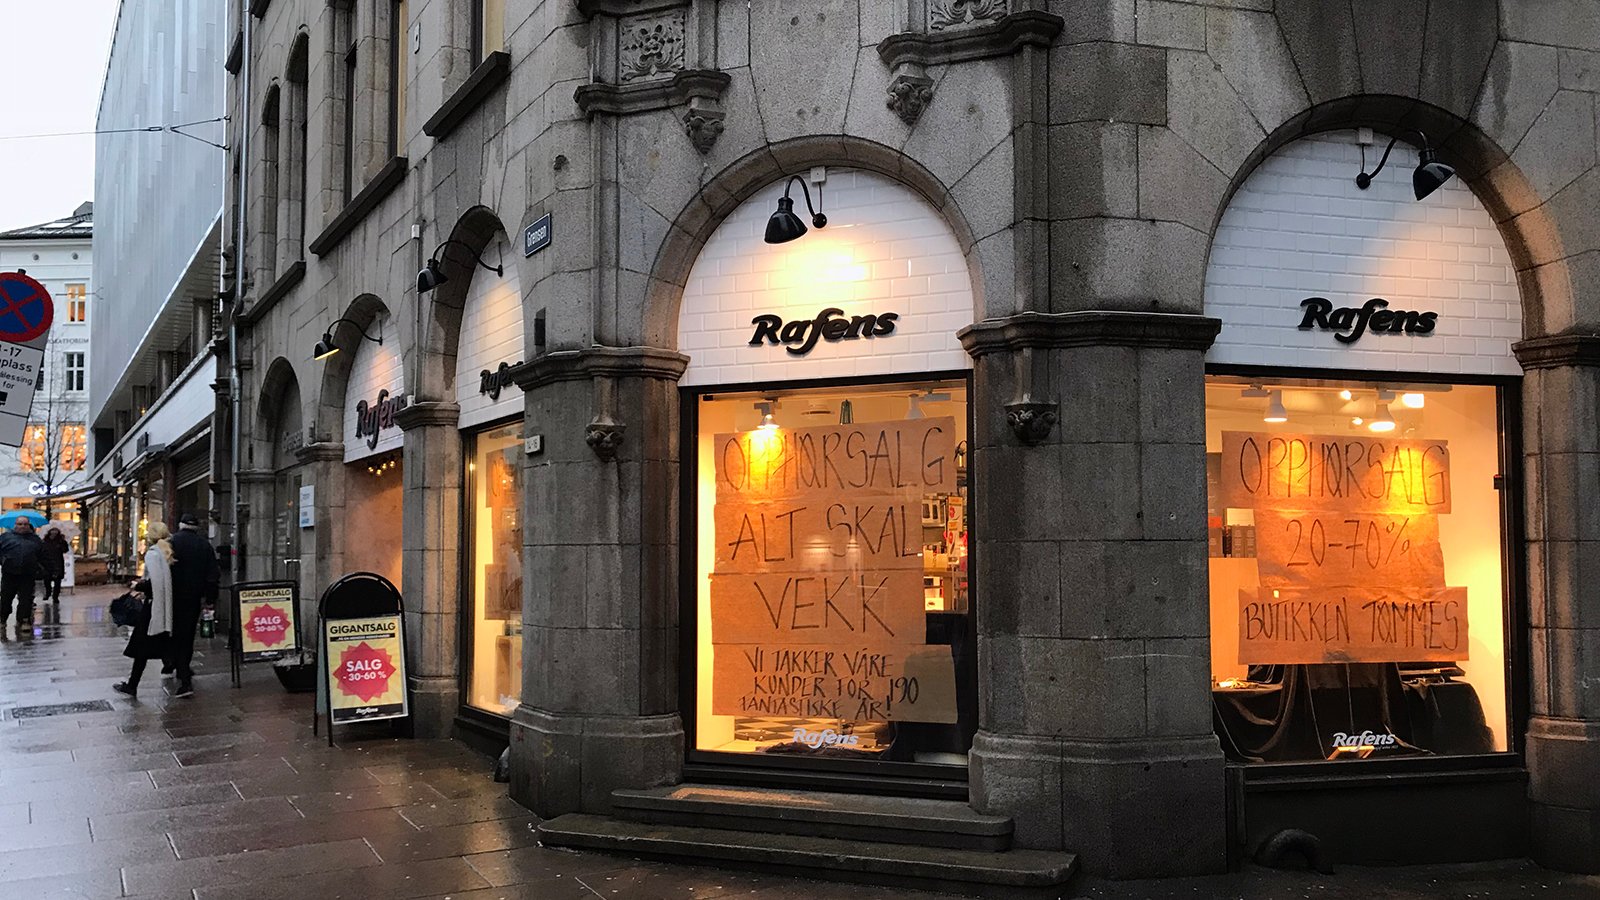 Slutt for Norges eldste butikk - stenger etter 191 års drift